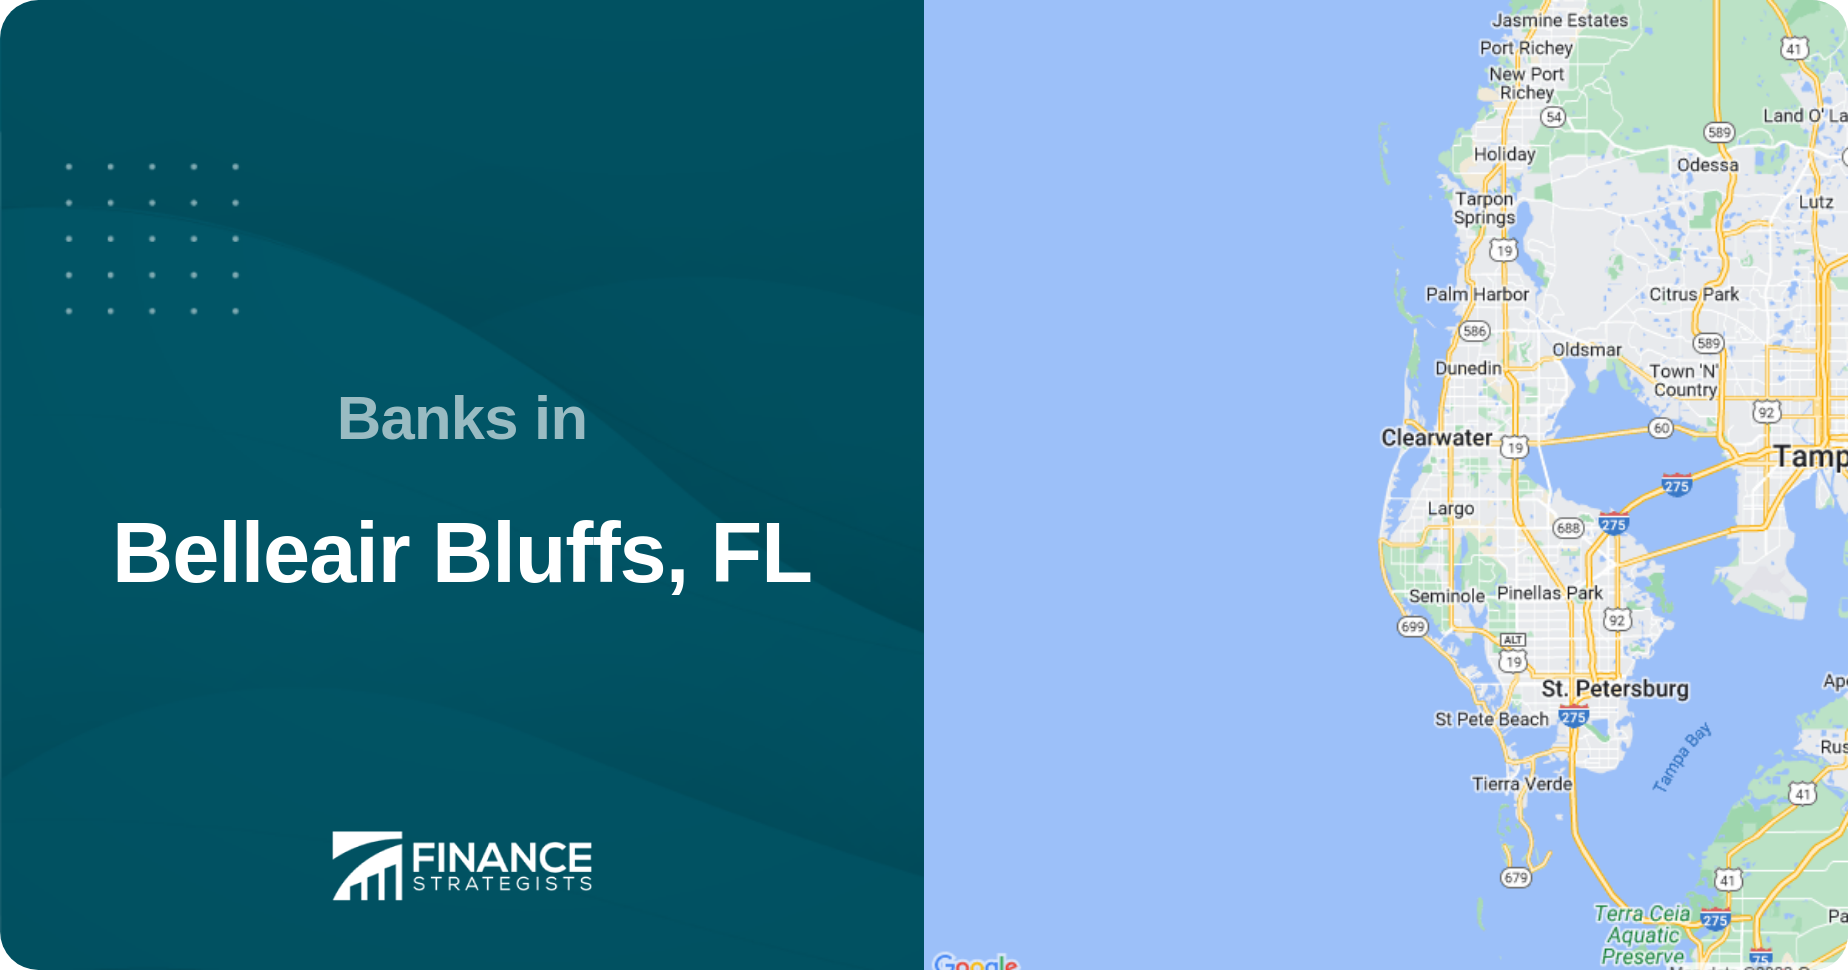 Banks in Belleair Bluffs, FL